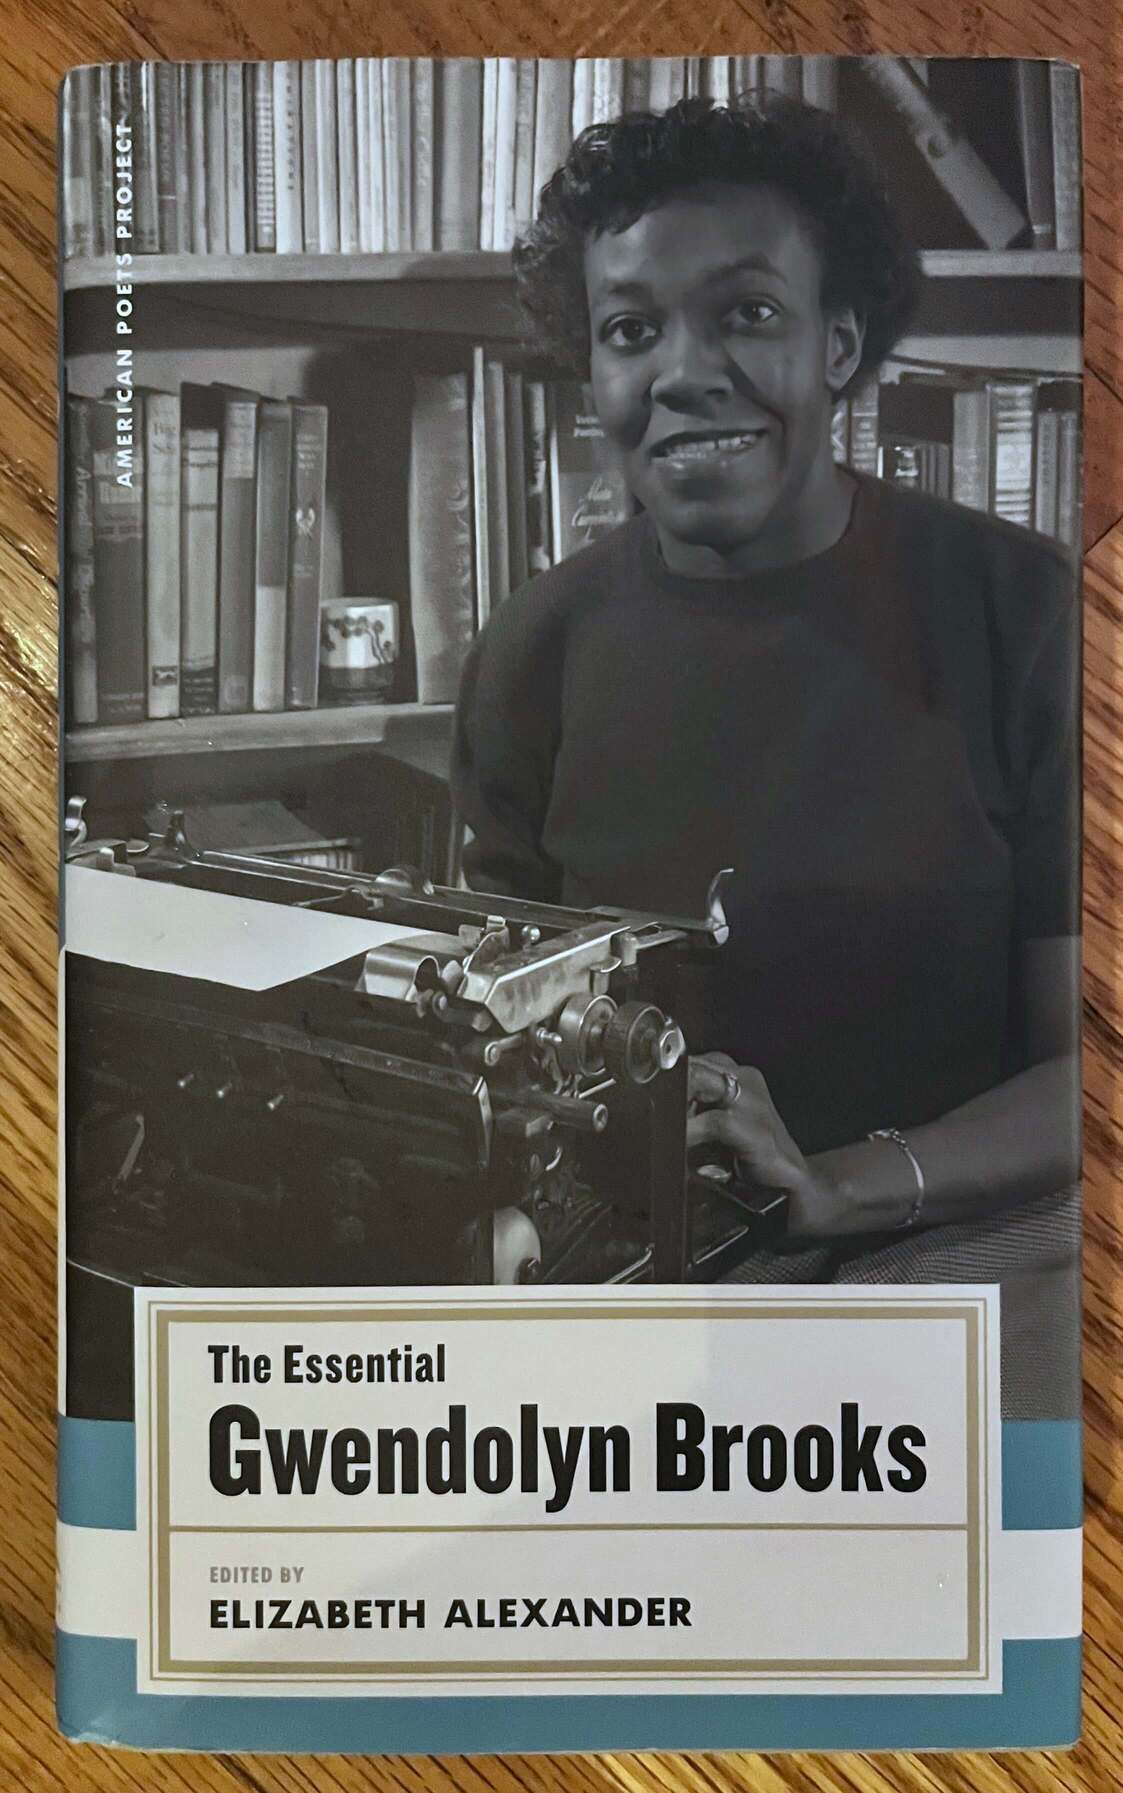 “The Essential Gwendolyn Brooks” Edited by Elizabeth Alexander.